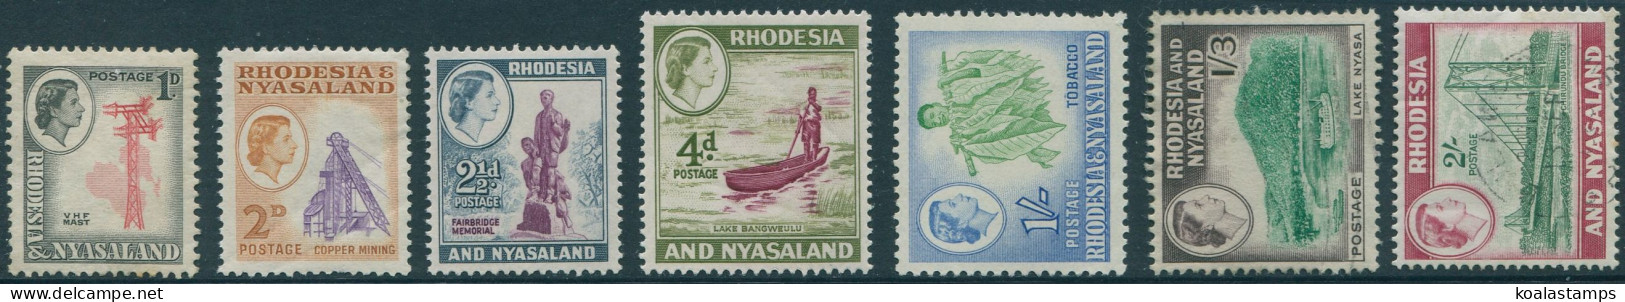 Rhodesia And Nyasaland 1959 SG20-26 Scenes (5) MNH - Rhodésie & Nyasaland (1954-1963)